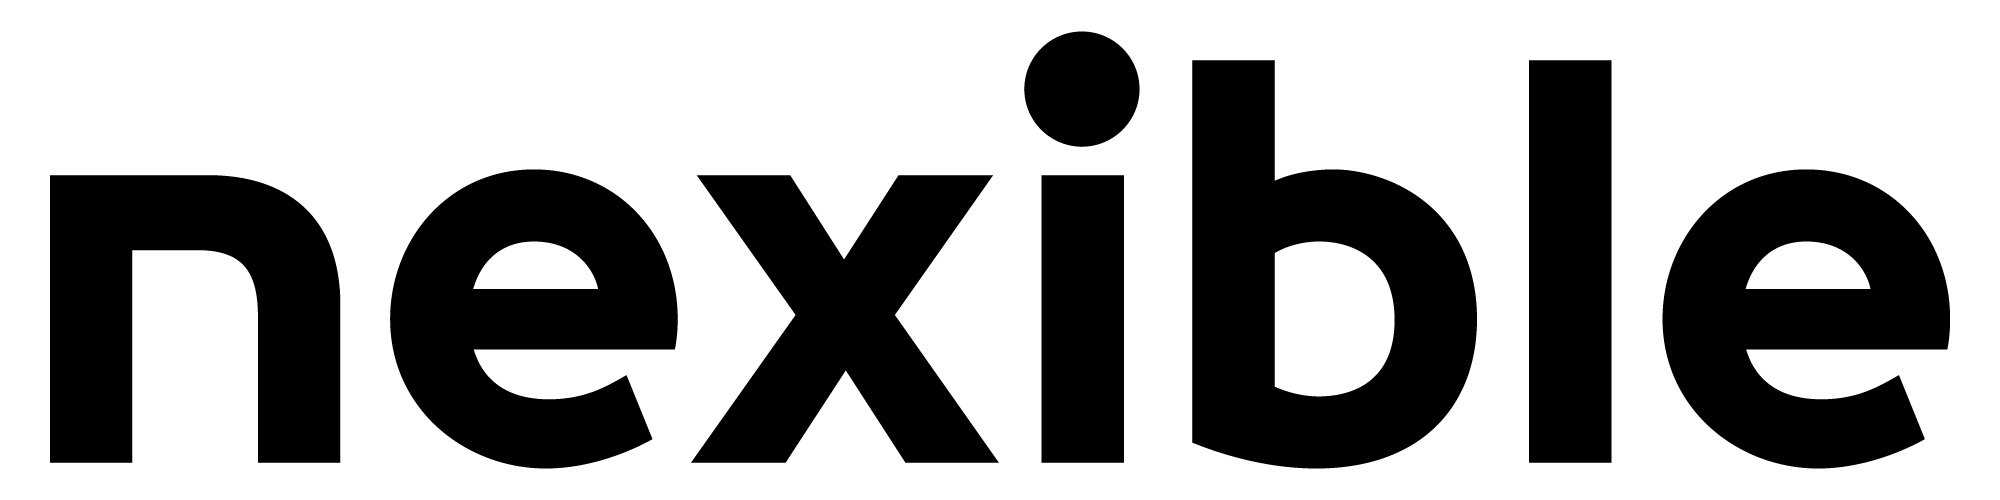 Reiseversicherung nexible logo